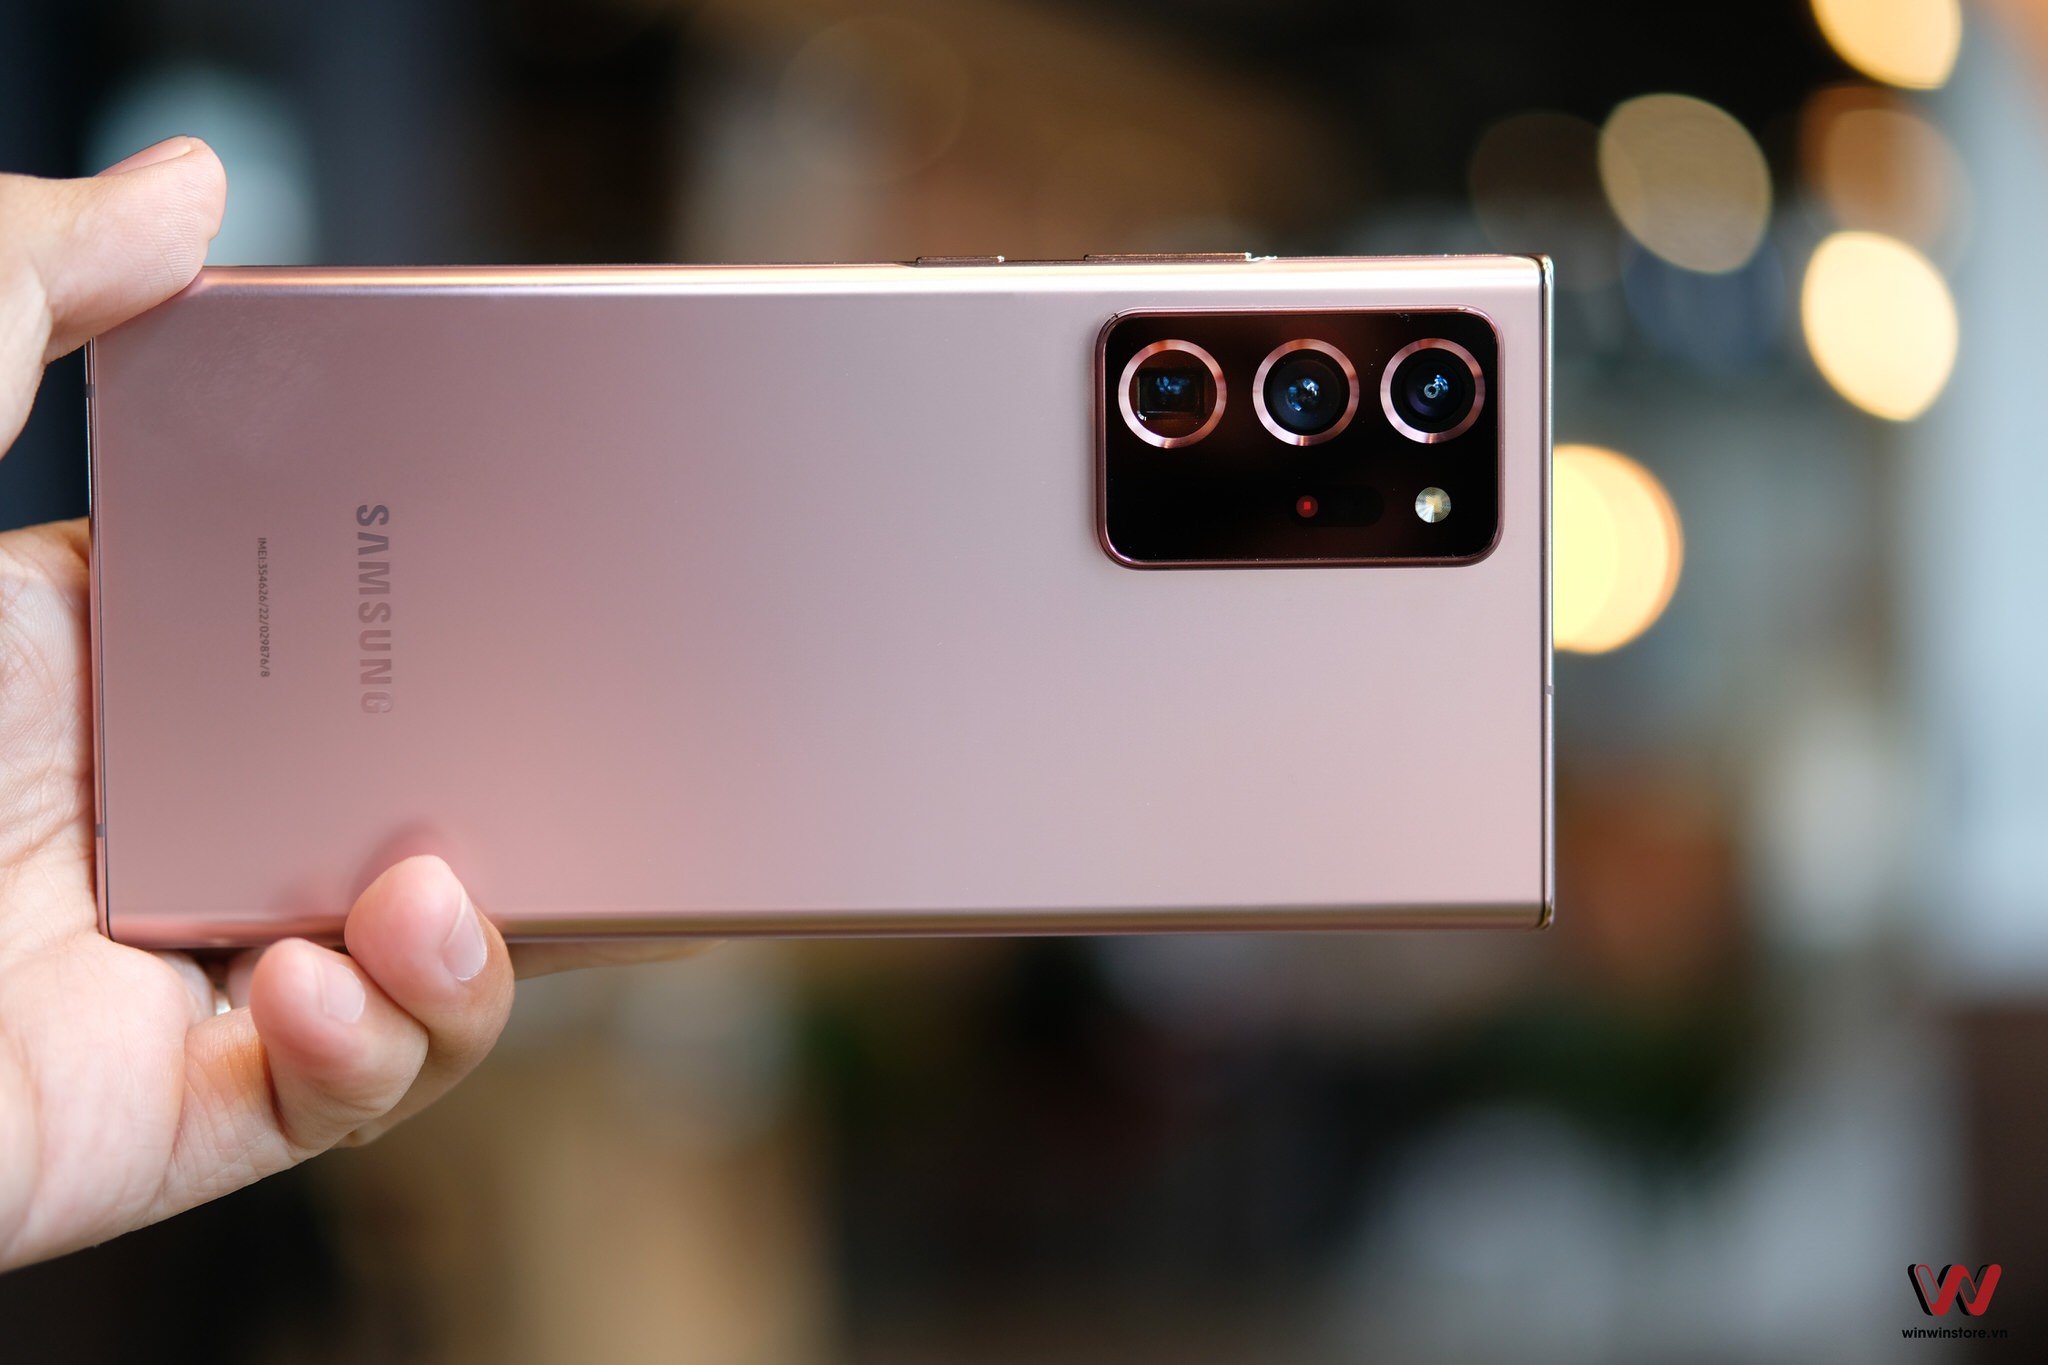 Trên tay Galaxy Note20 Ultra 5G chính hãng, camera tương tự S20 Ultra, nổi bật với quay video 8K